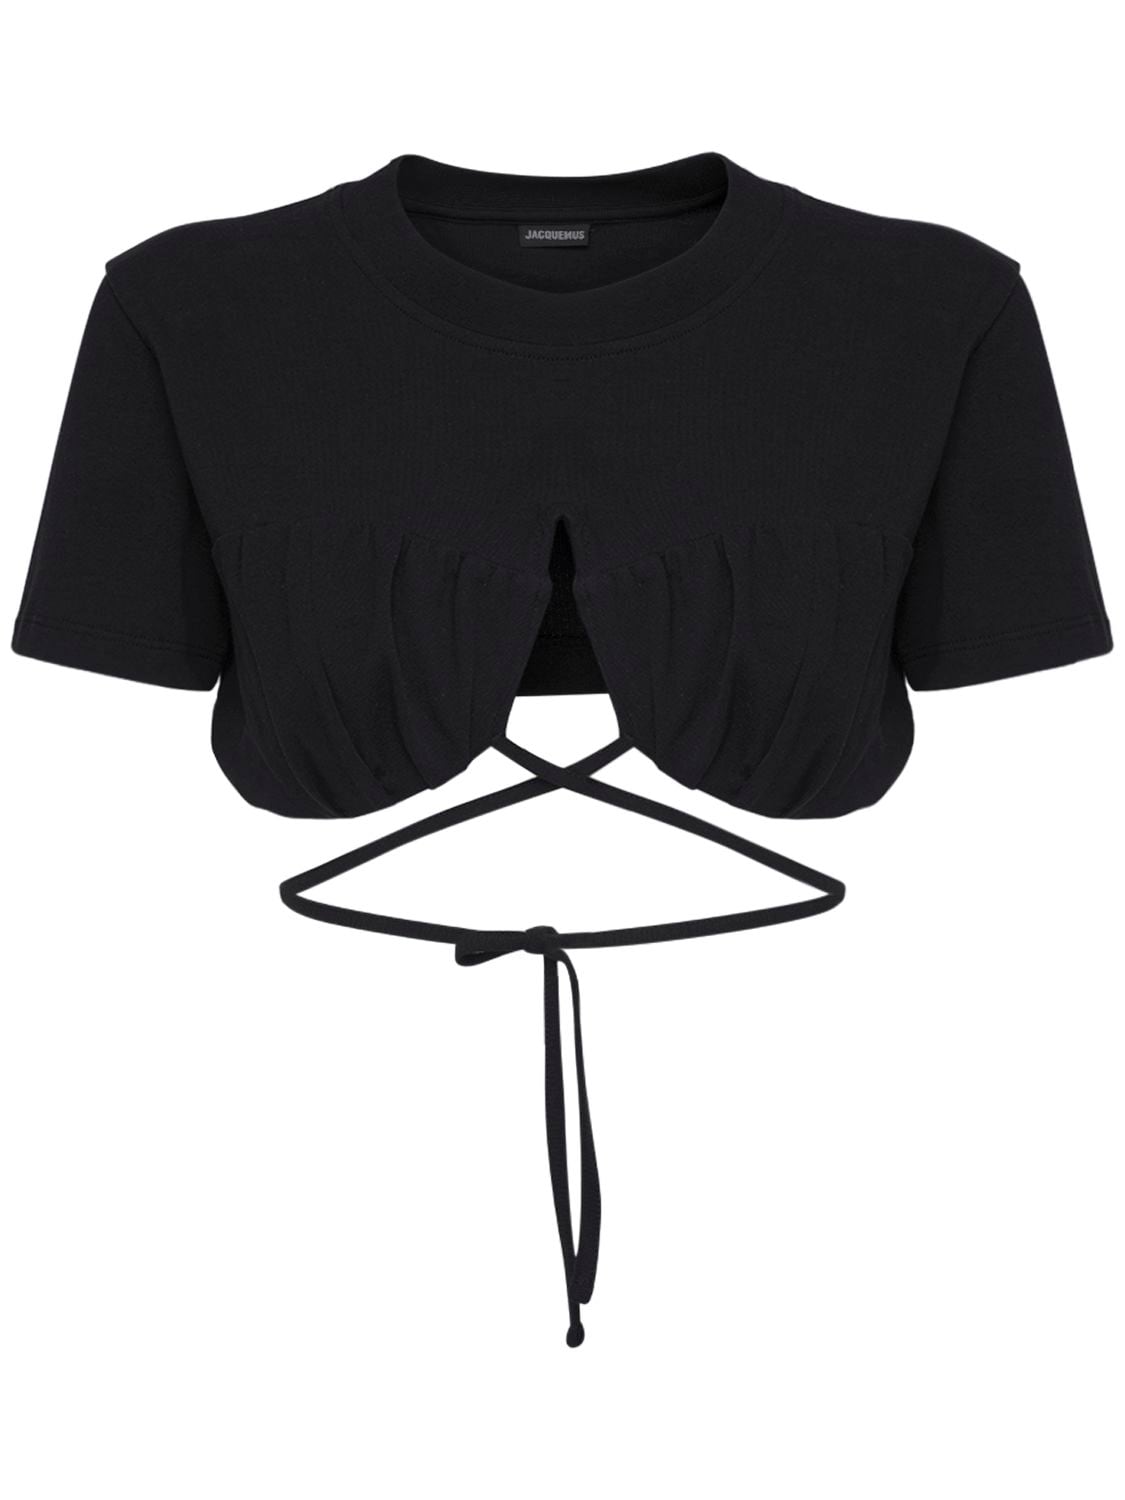 JACQUEMUS Le T-shirt Baci Cotton Self Tie Crop Top